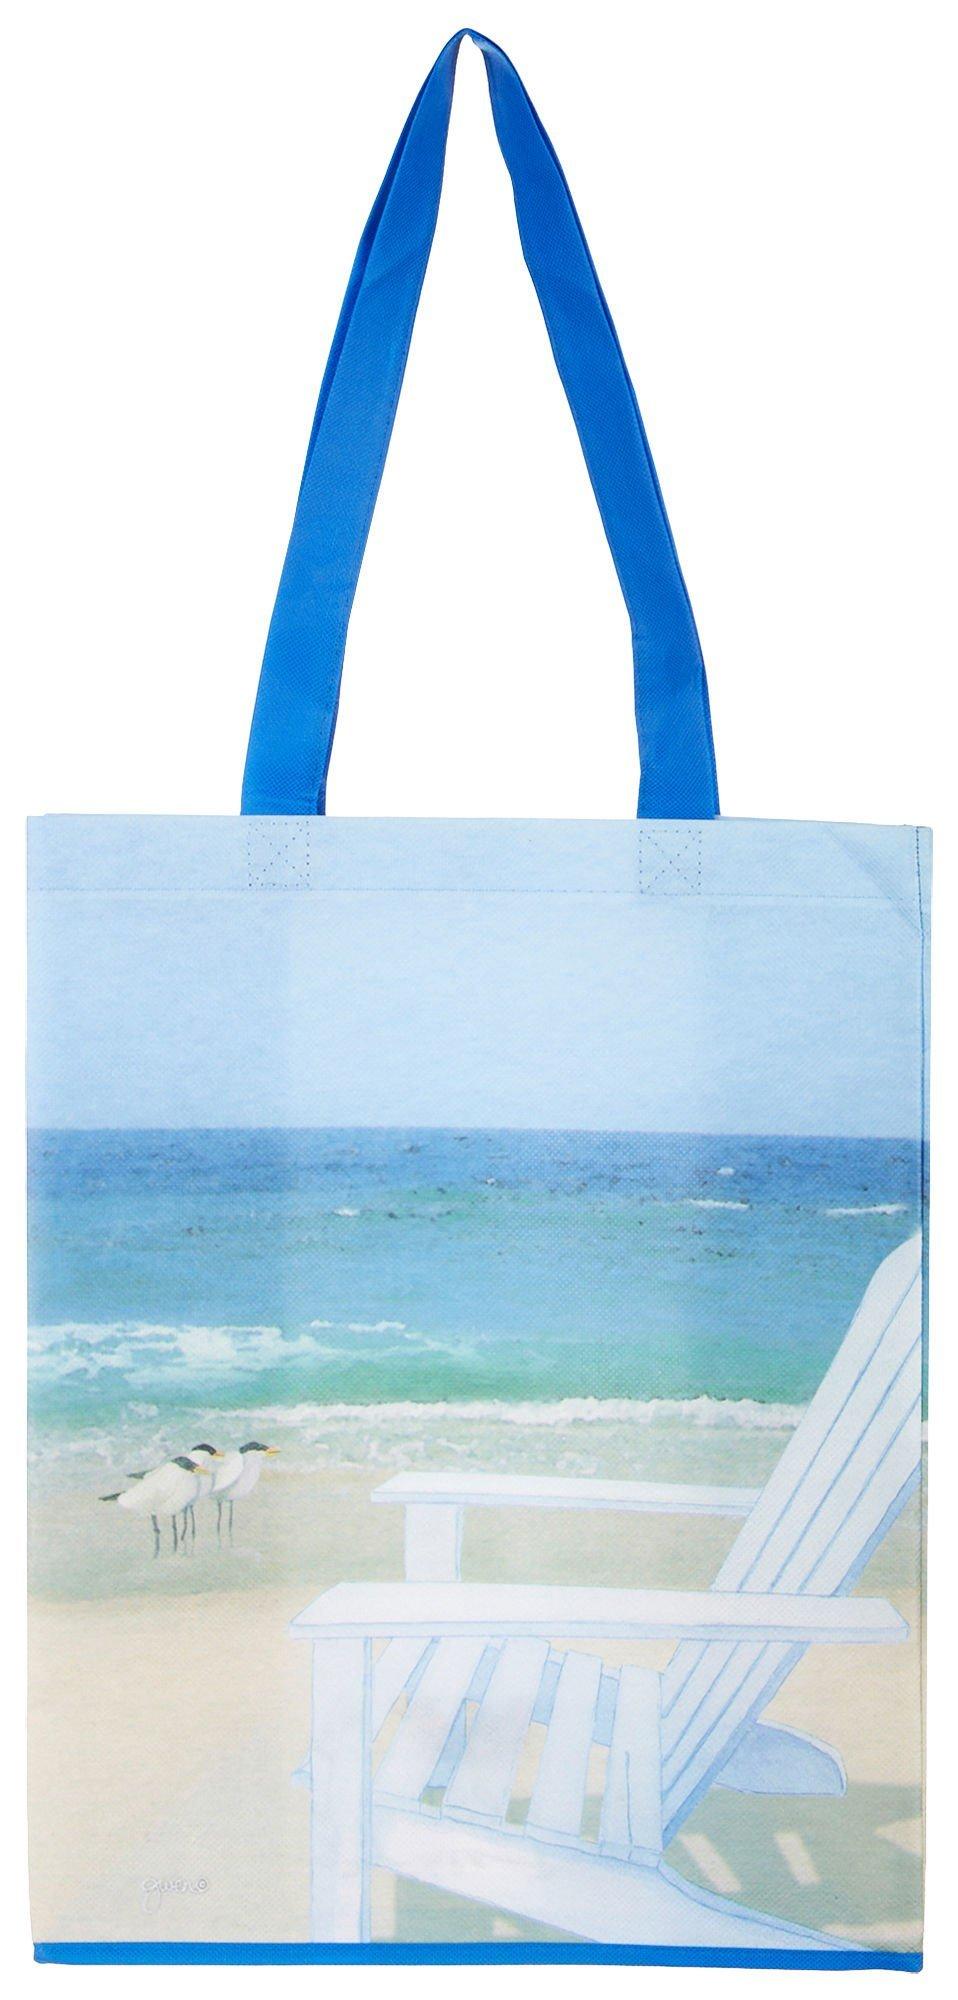 Beach Chair Print Shopping Tote Bag